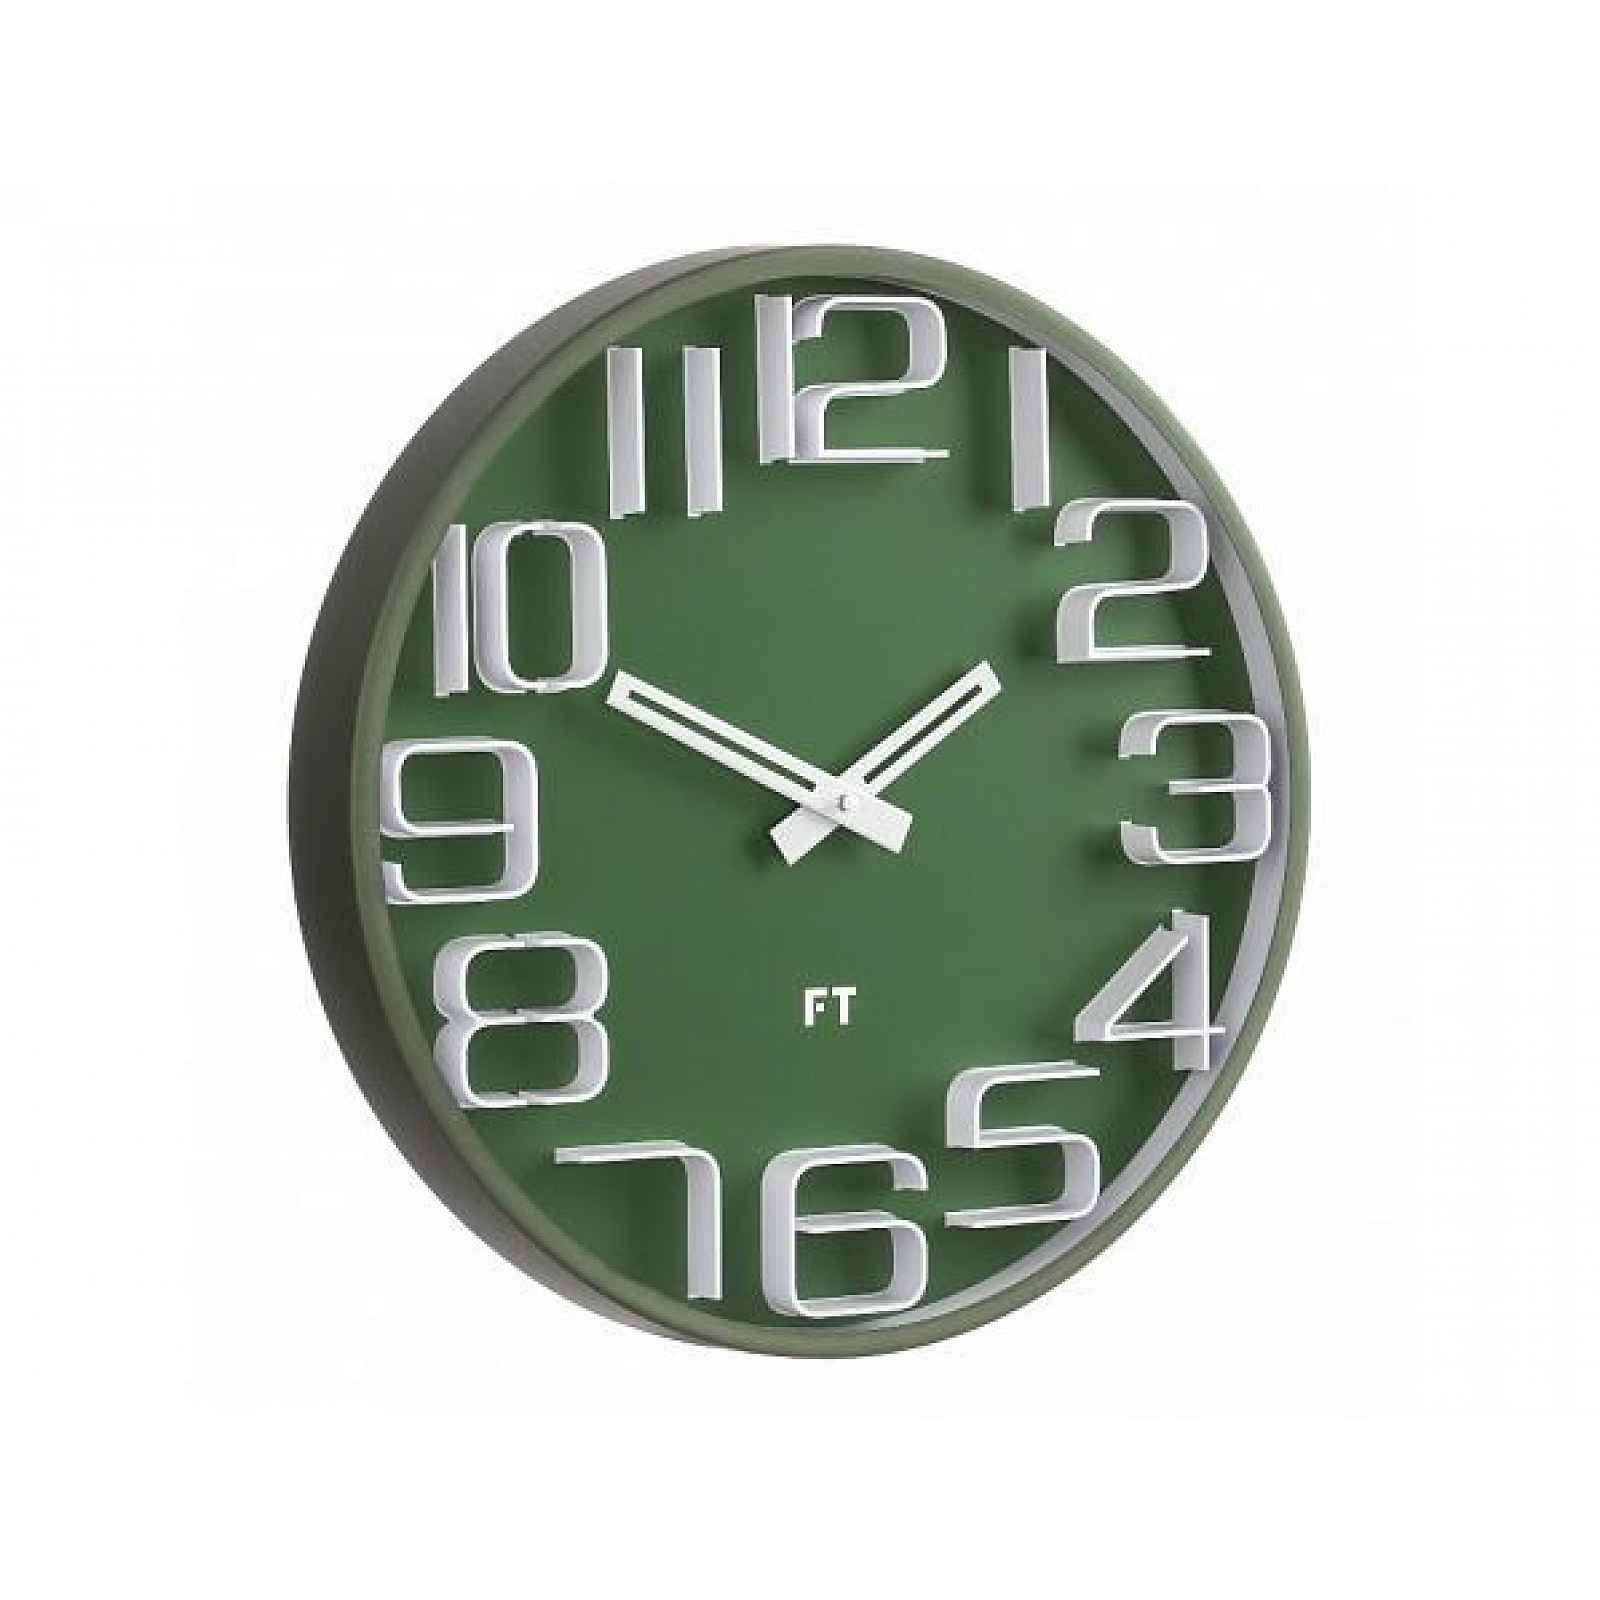 Designové nástěnné hodiny Future Time FT8010GR Numbers 30cm